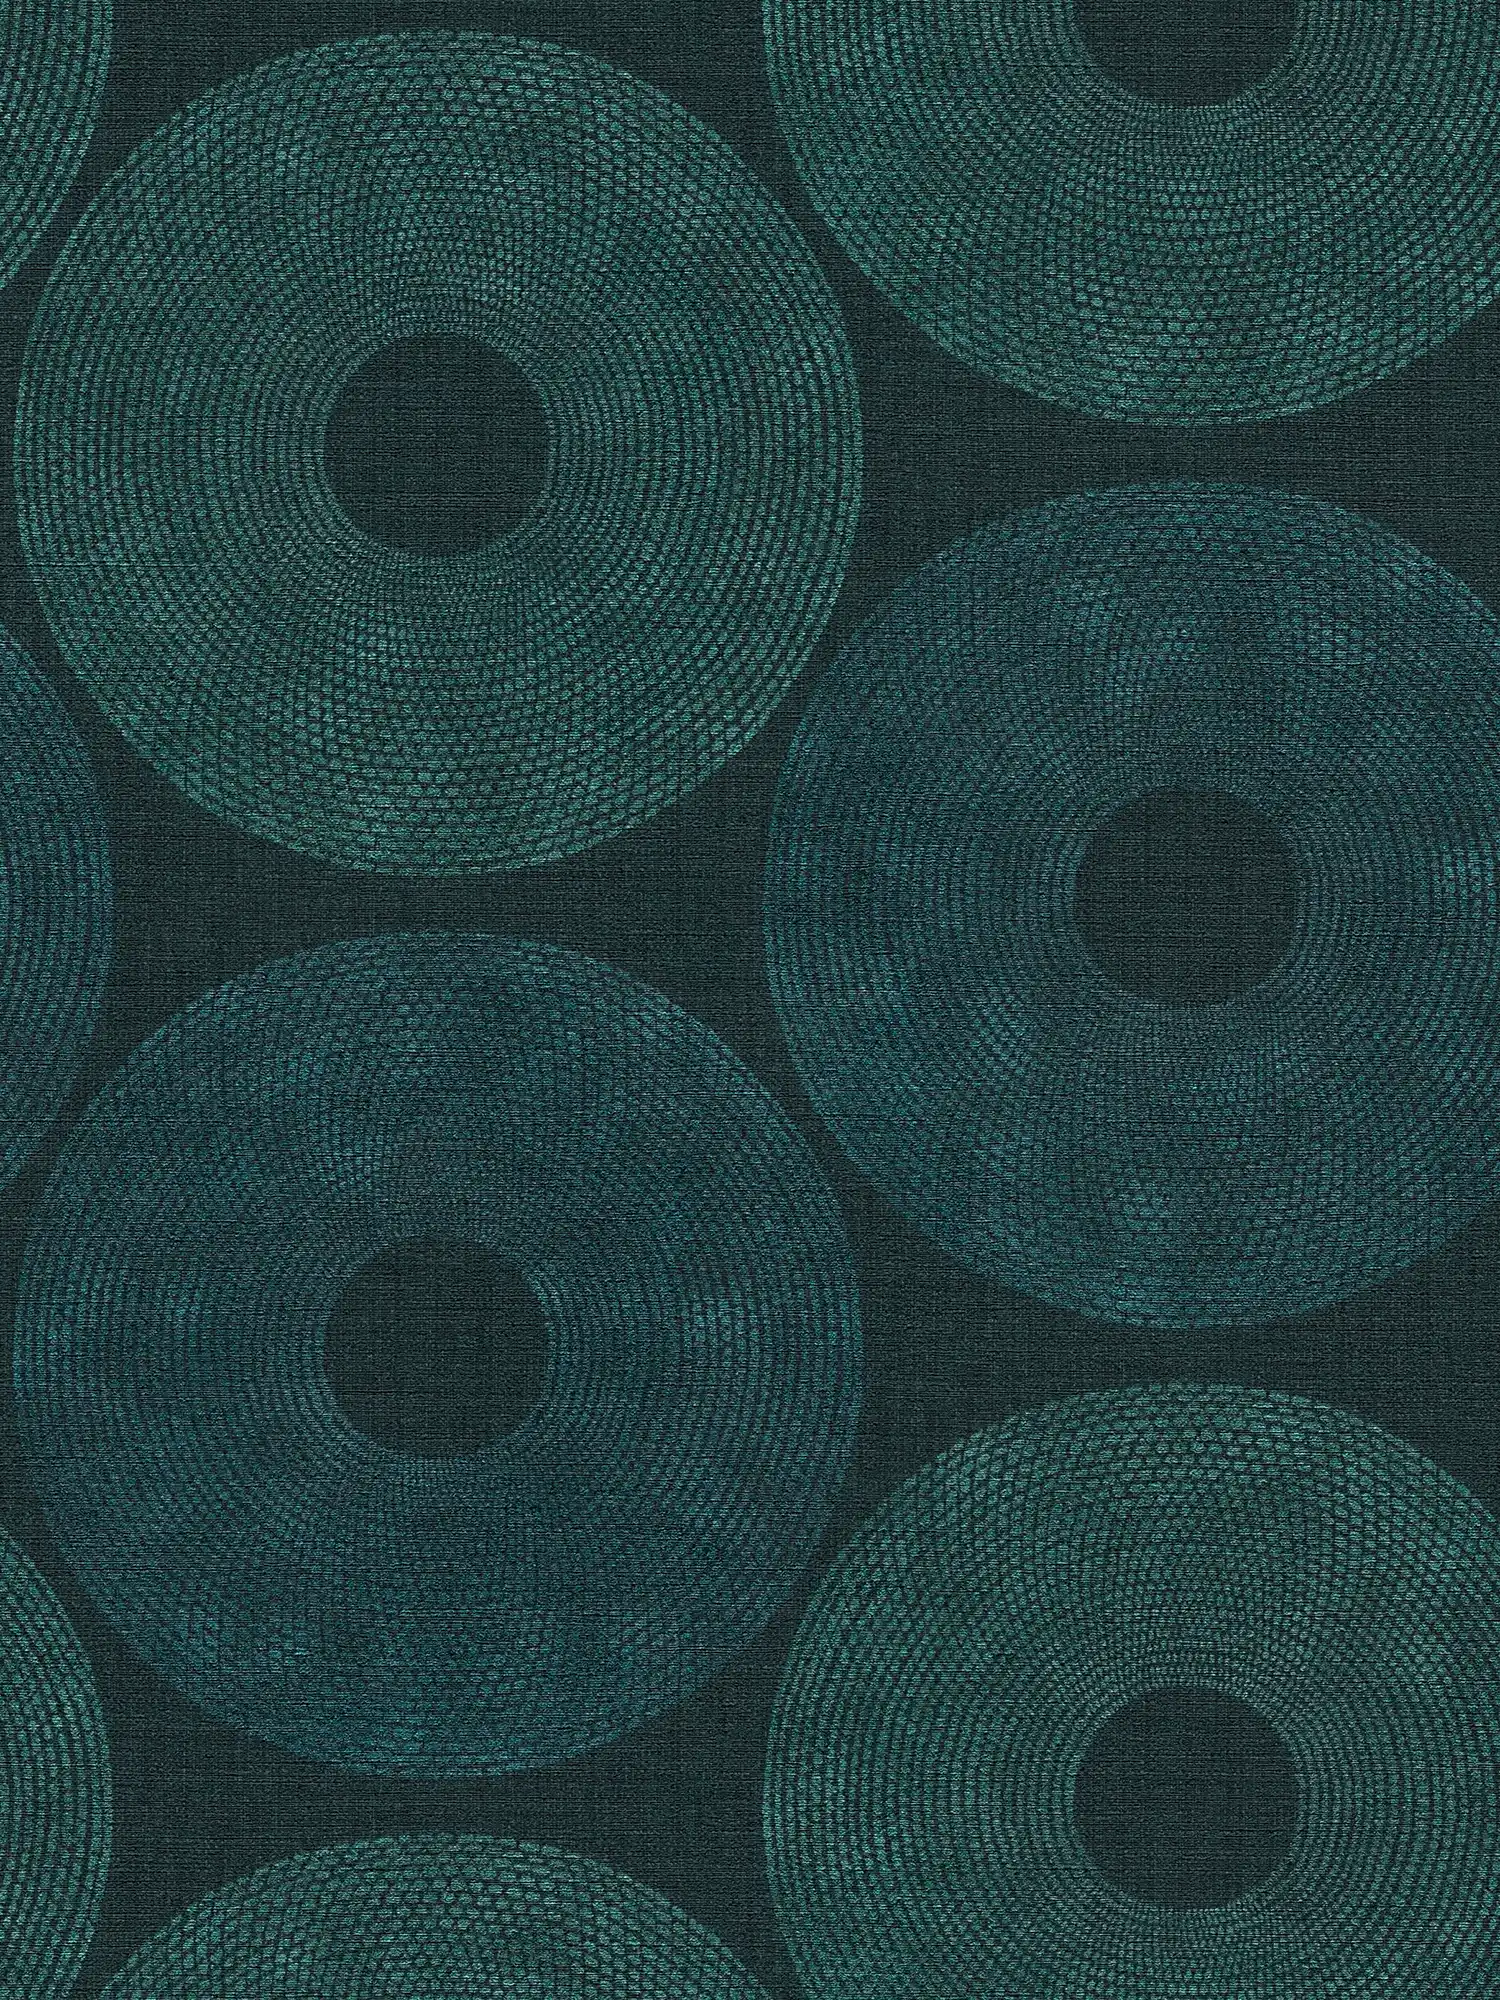 Ethno behang cirkels met structuur design - groen, metallic
